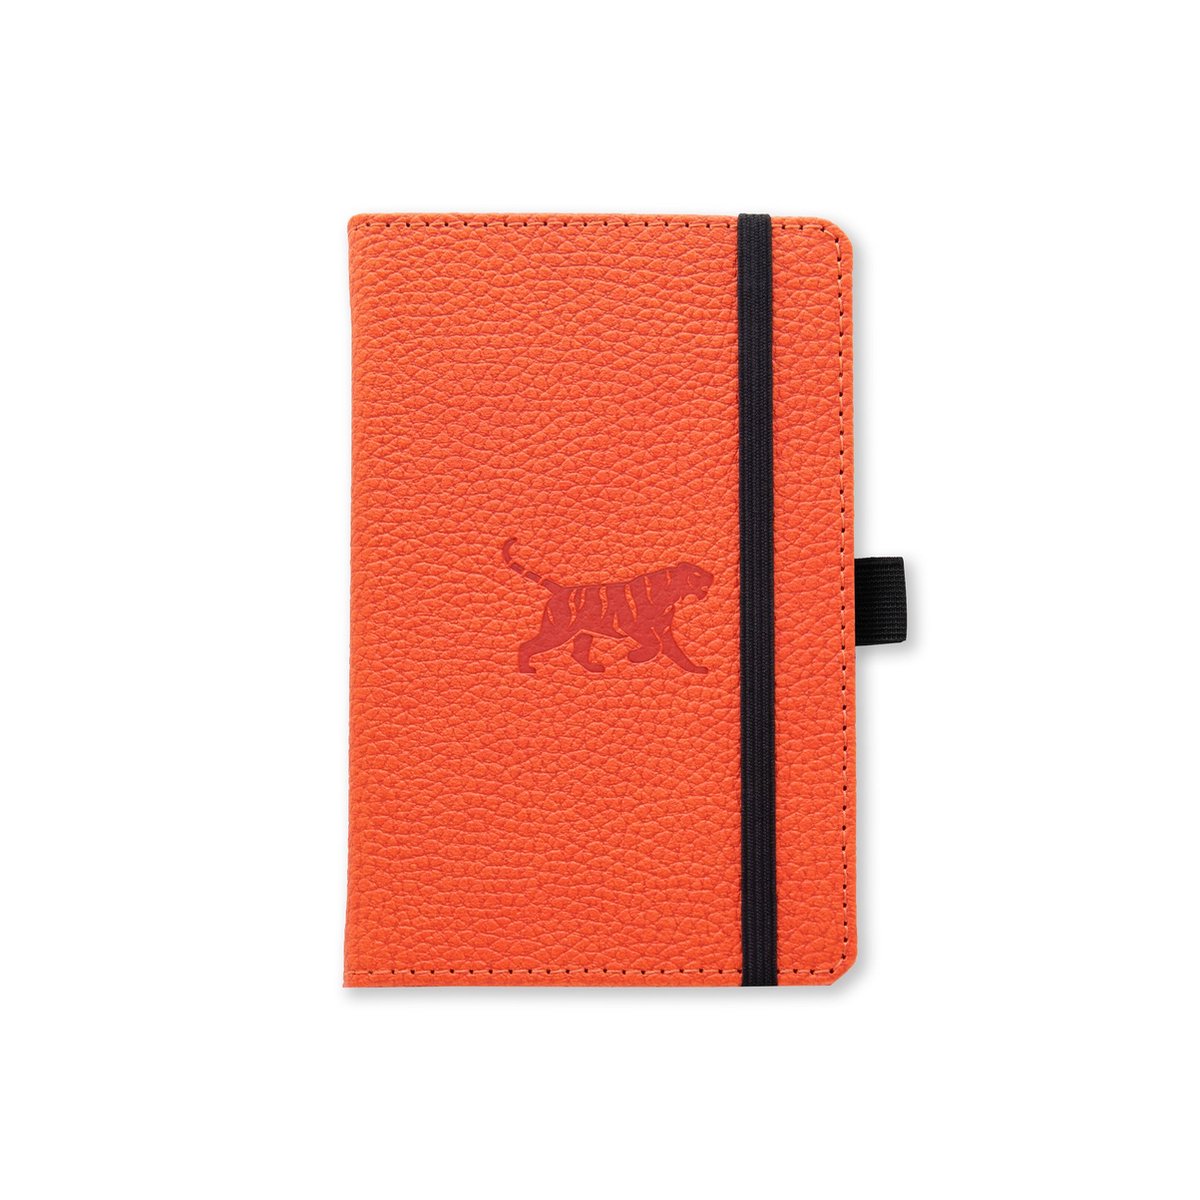 Dingbats* Wildlife A6 Notitieboek - Orange Tiger Stippen - Bullet Journal met 100 gsm Inktvrij Papier - Schetsboek met Harde Kaft, PU-leer, Geperforeerd